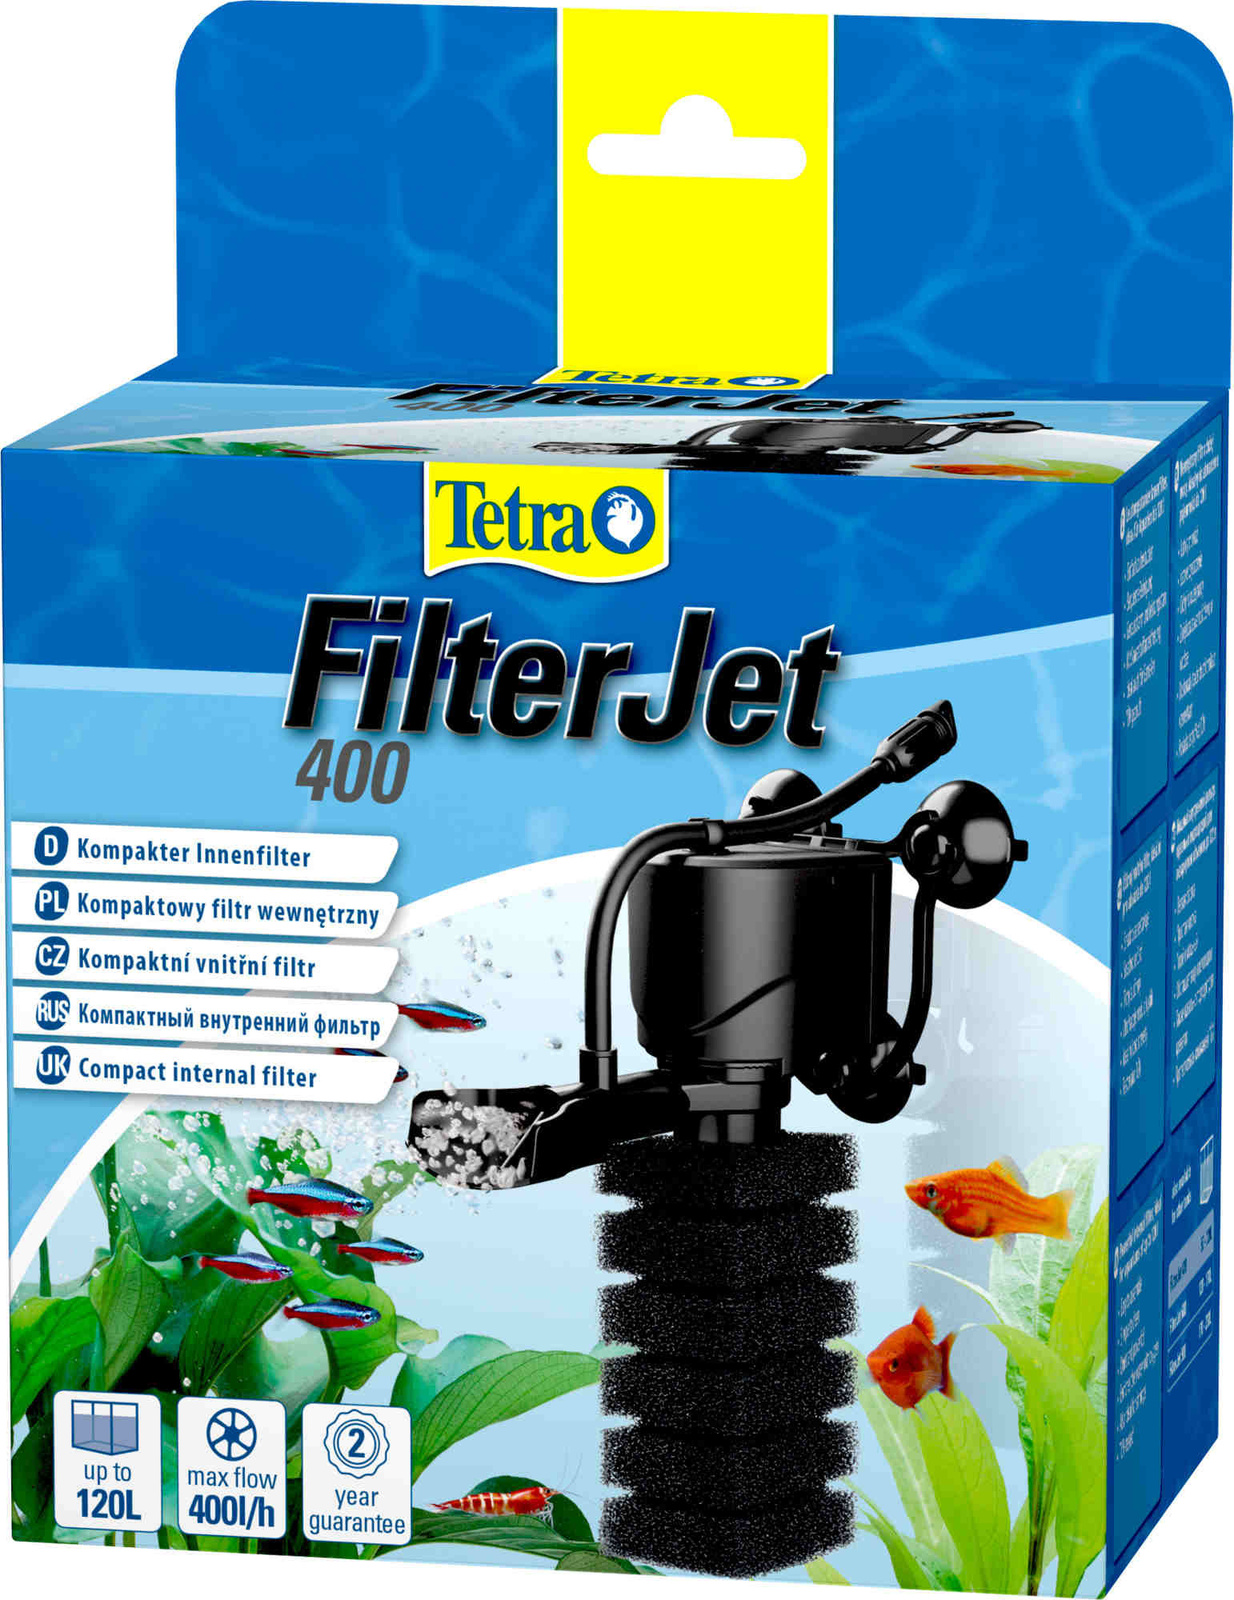 Tetra (оборудование) Tetra (оборудование) внутренний фильтр FilterJet 400, для аквариумов 50 – 120л (460 г) tetra оборудование tetra оборудование внутренний фильтр filterjet 400 для аквариумов 50 – 120л 460 г